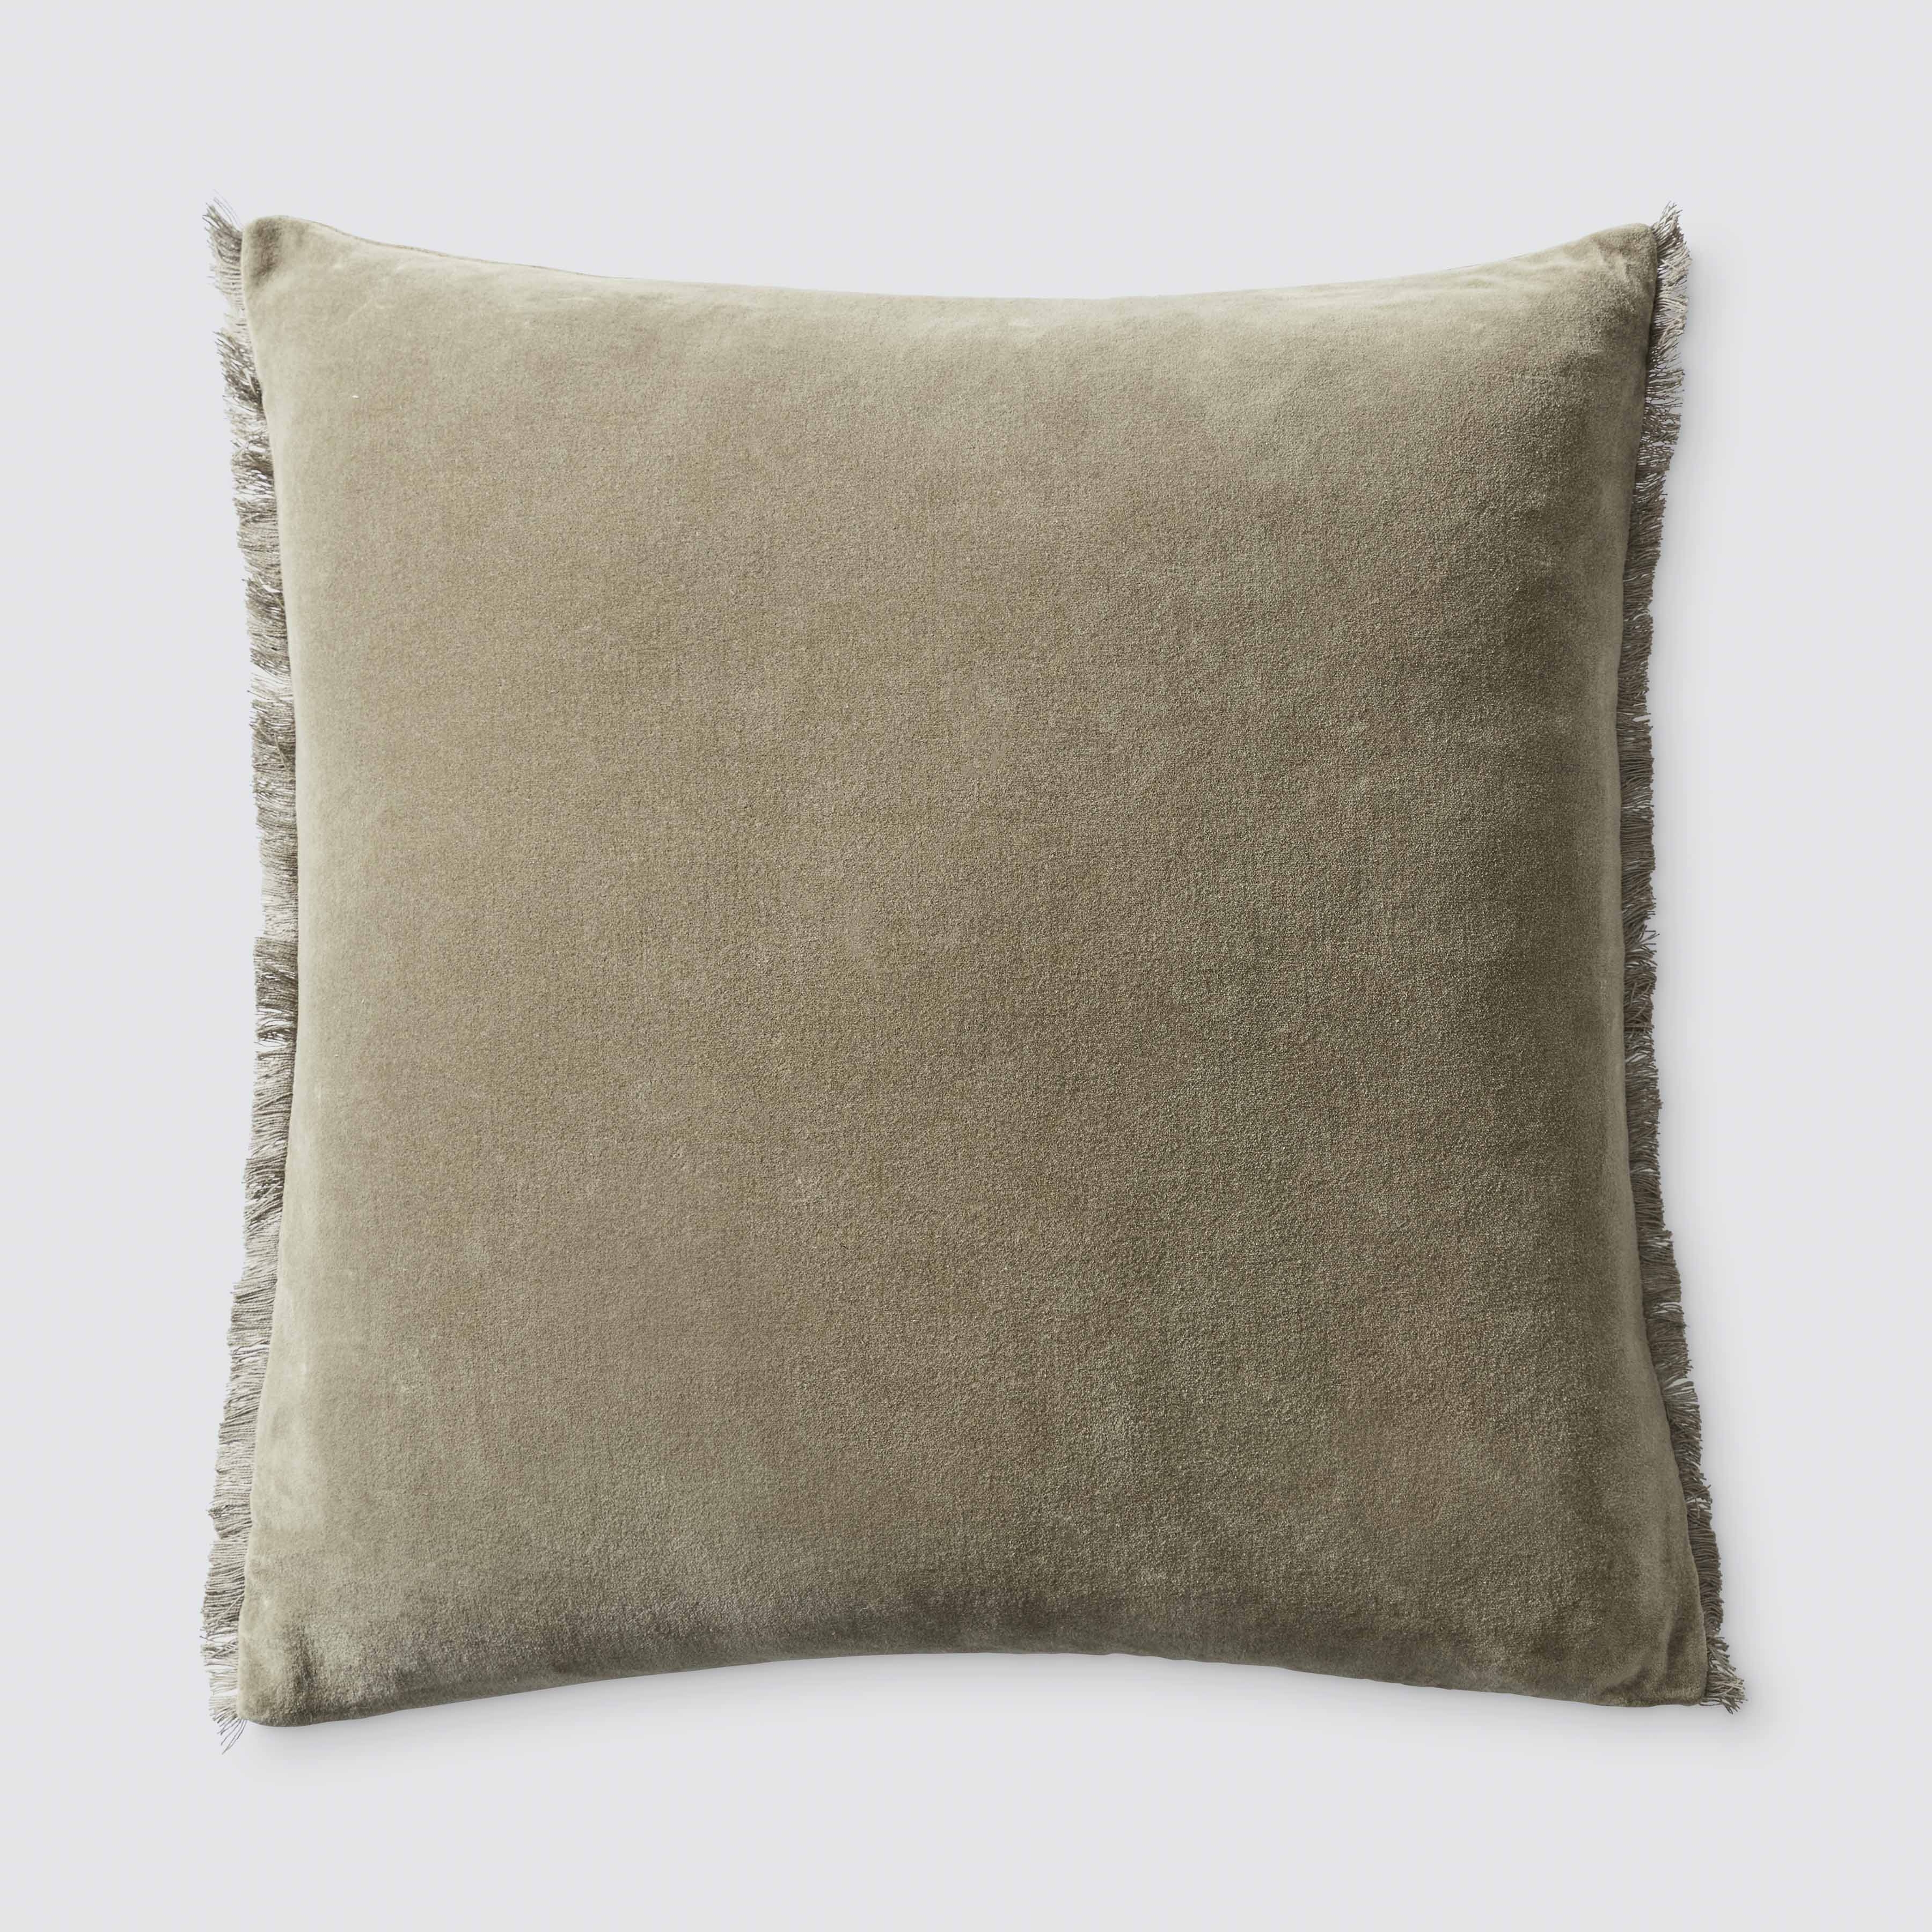 The Citizenry Naveta Velvet Pillow | 22" x 22" | Blue - Image 1